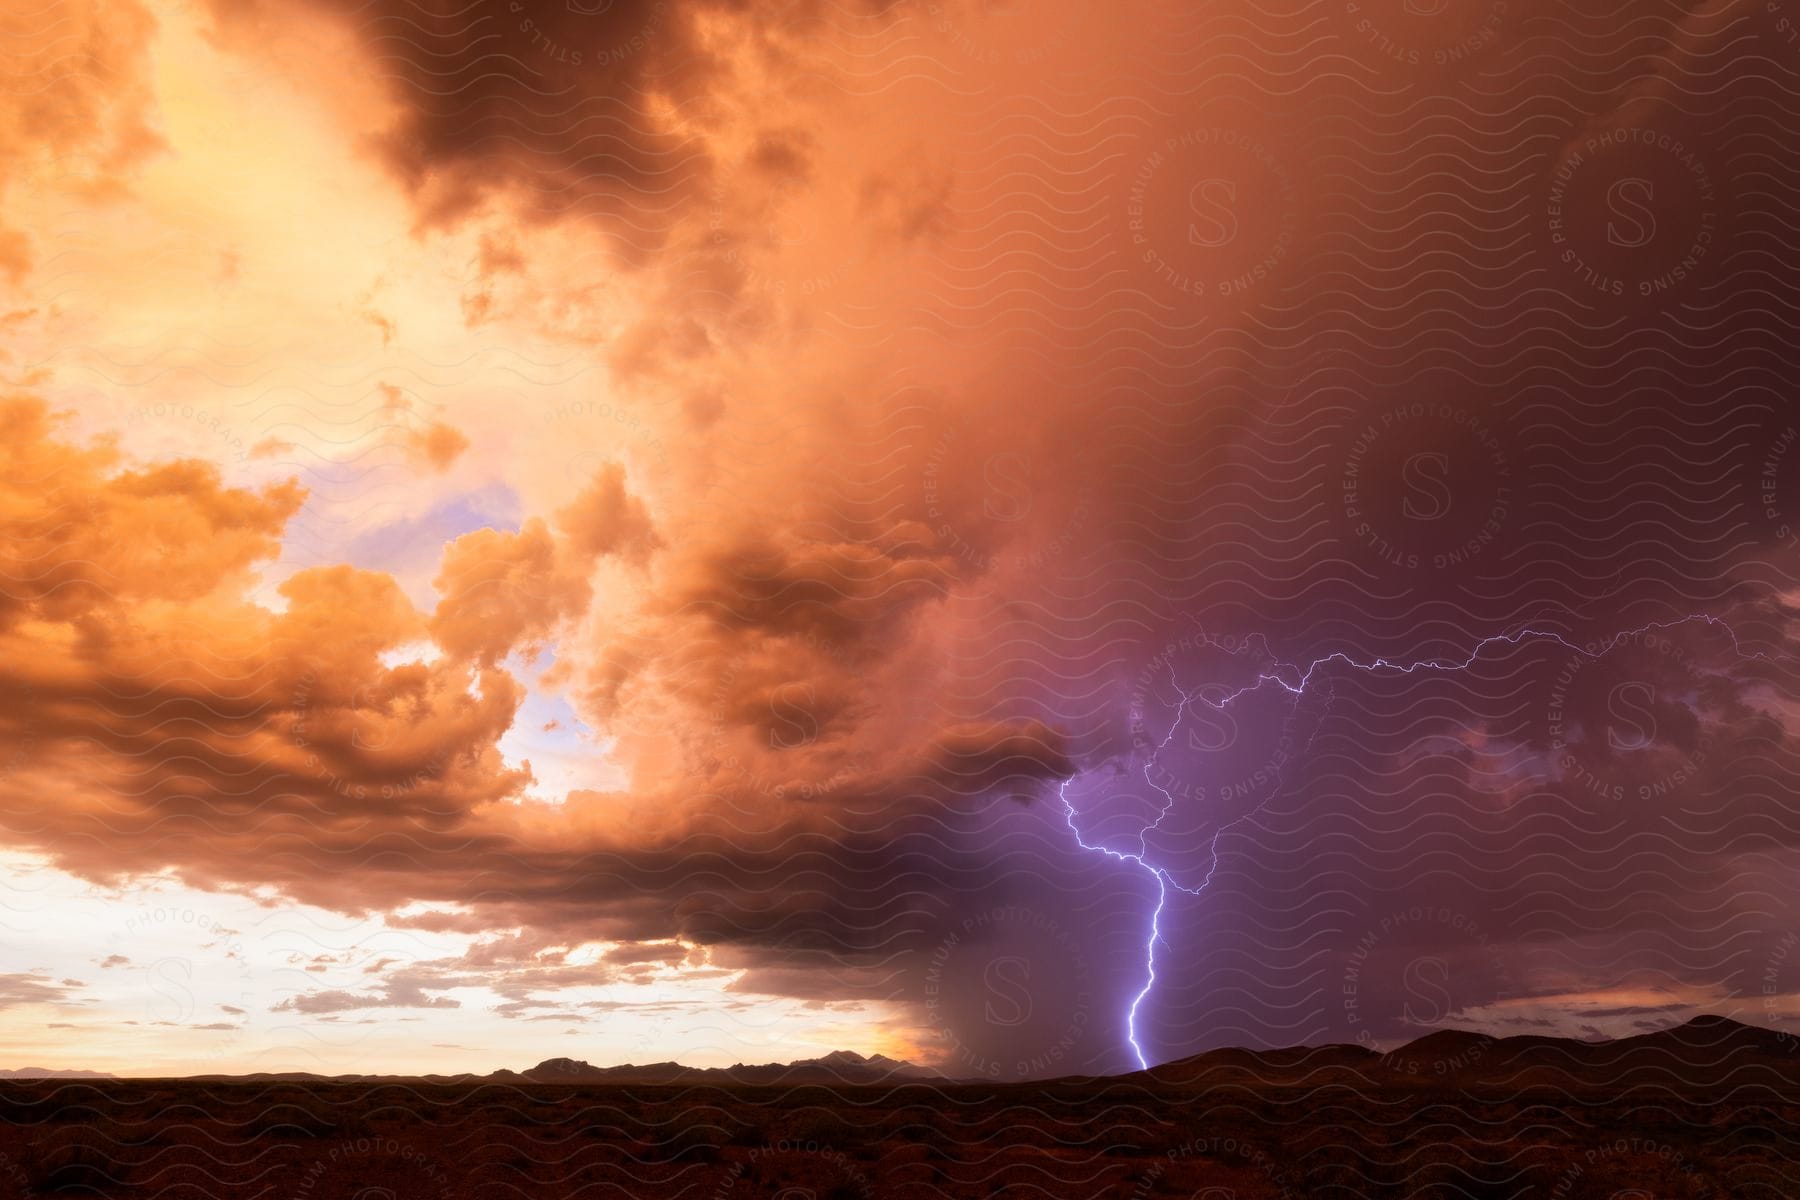 A blue lightning bolt strikes the desert hills at dusk in arizona